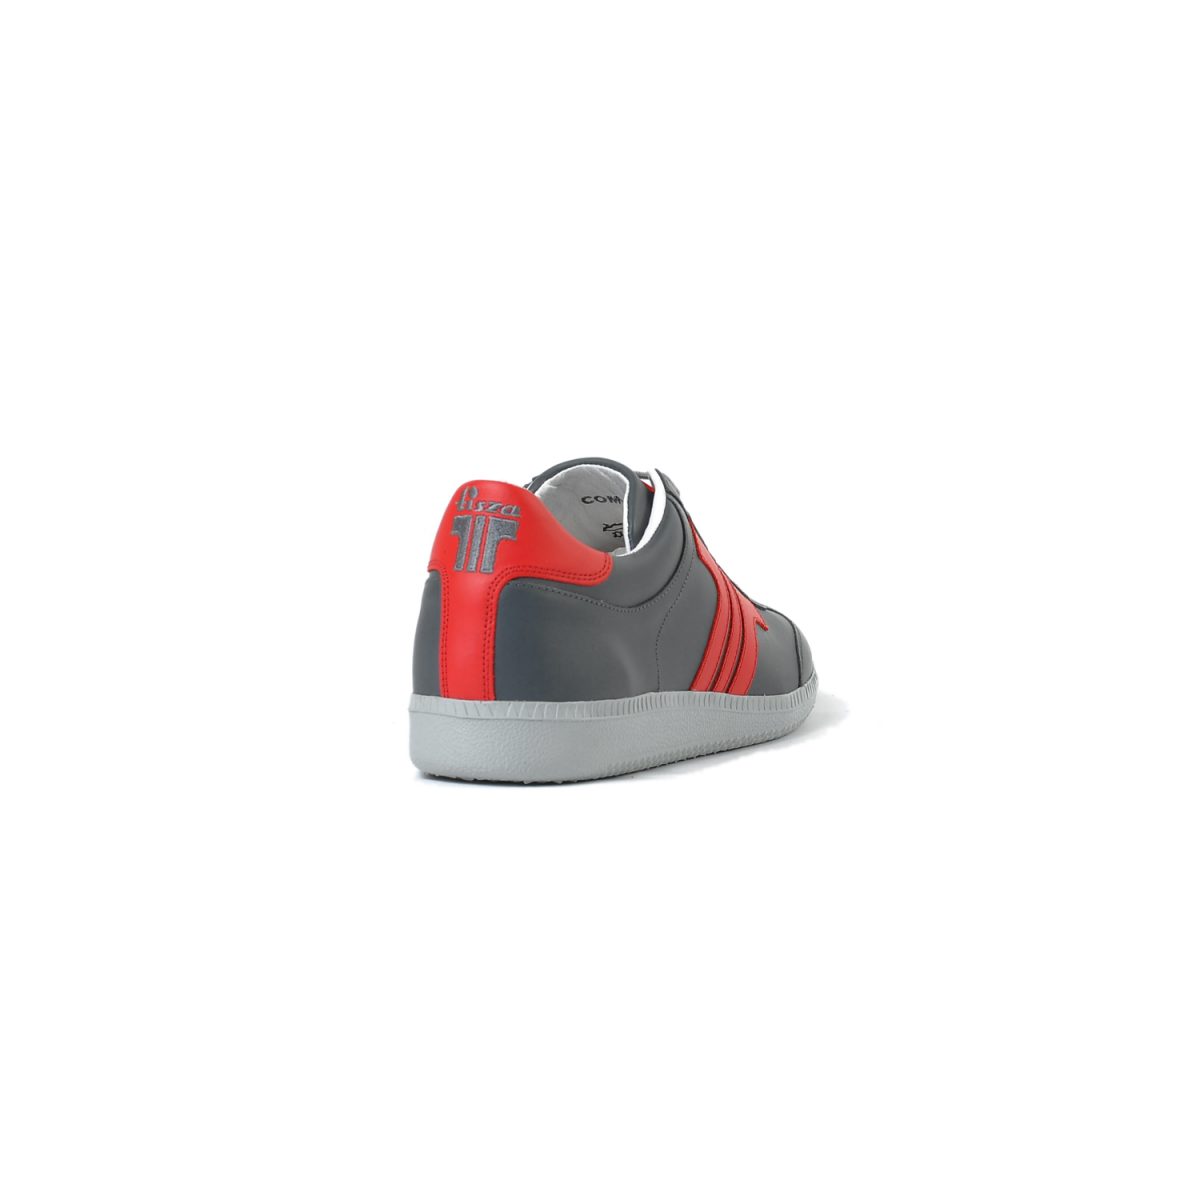 Tisza cipő - Compakt - Szürke-piros